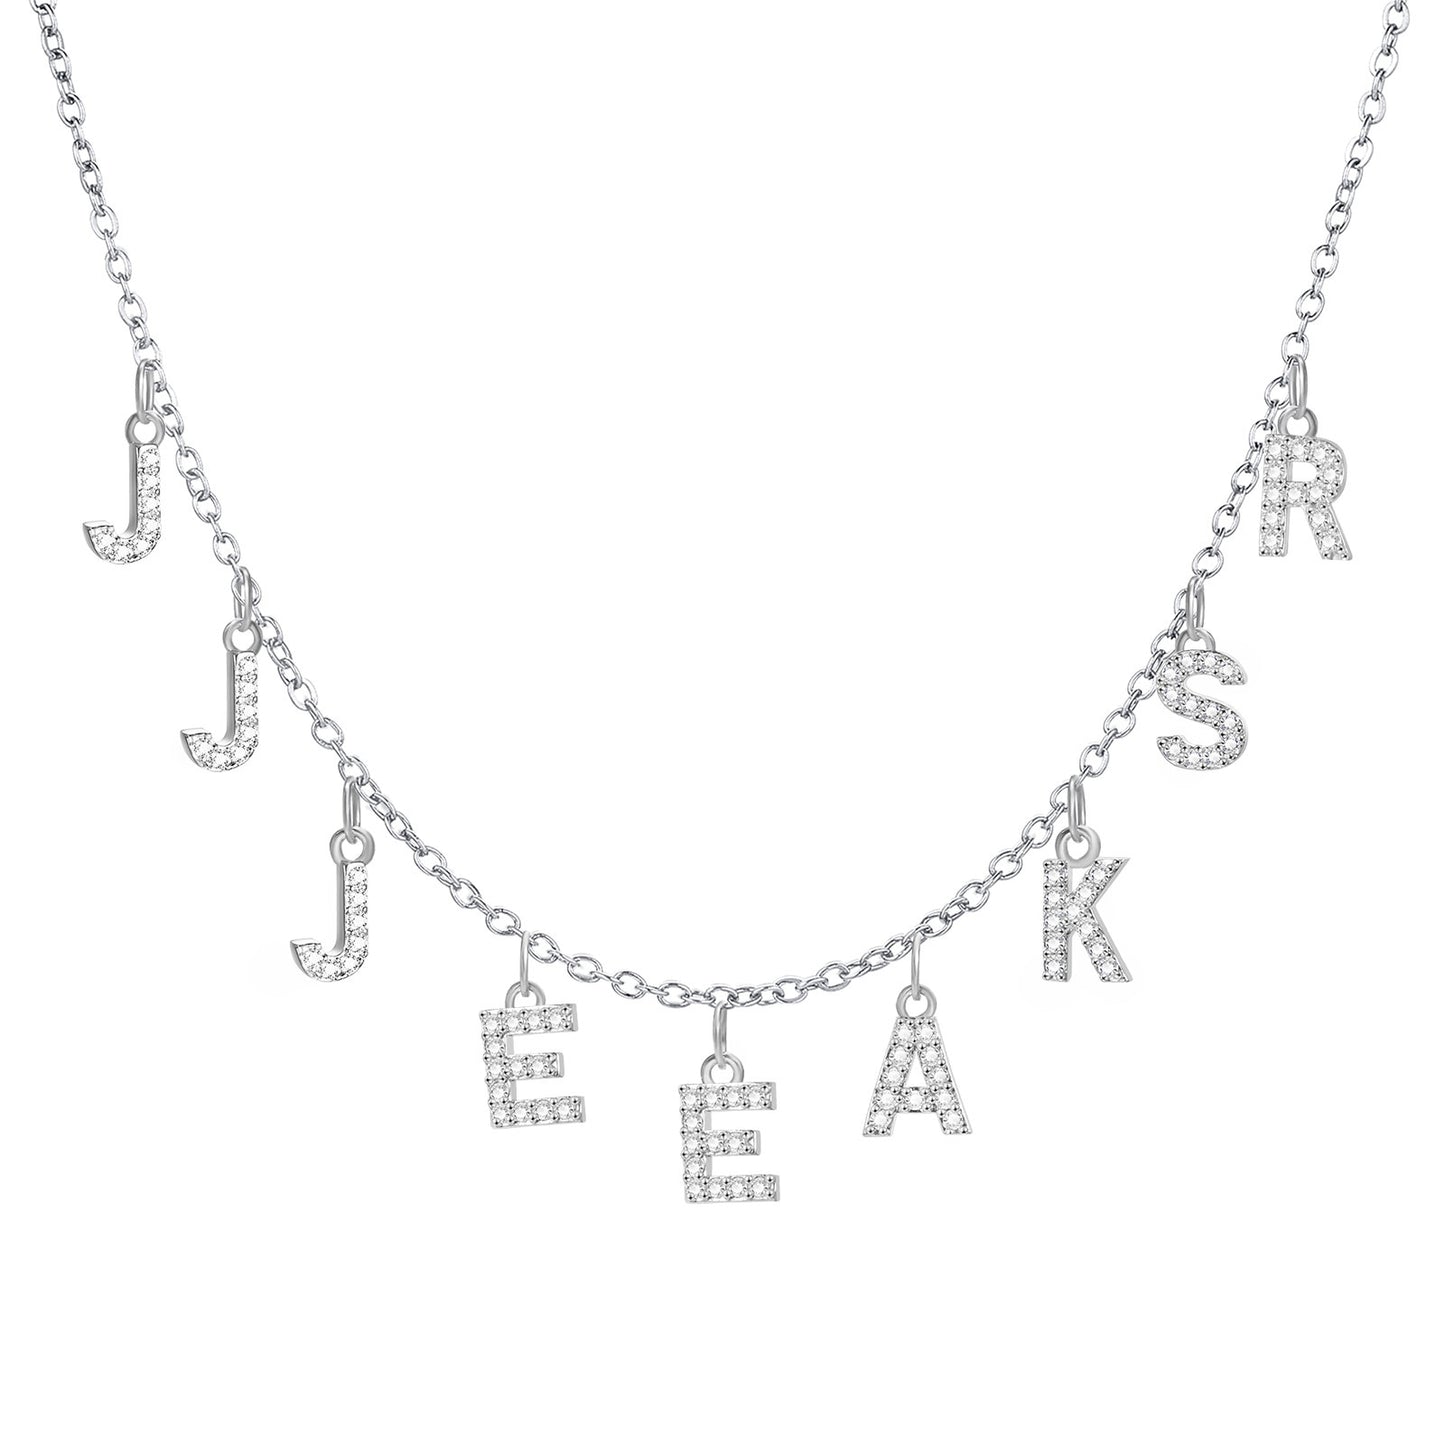 Personalisierte Buchstaben Halskette mit Namen, Silber / Minikauf.chPersonalisierte Buchstaben Halskette mit Namen, Silber / Minikauf.ch